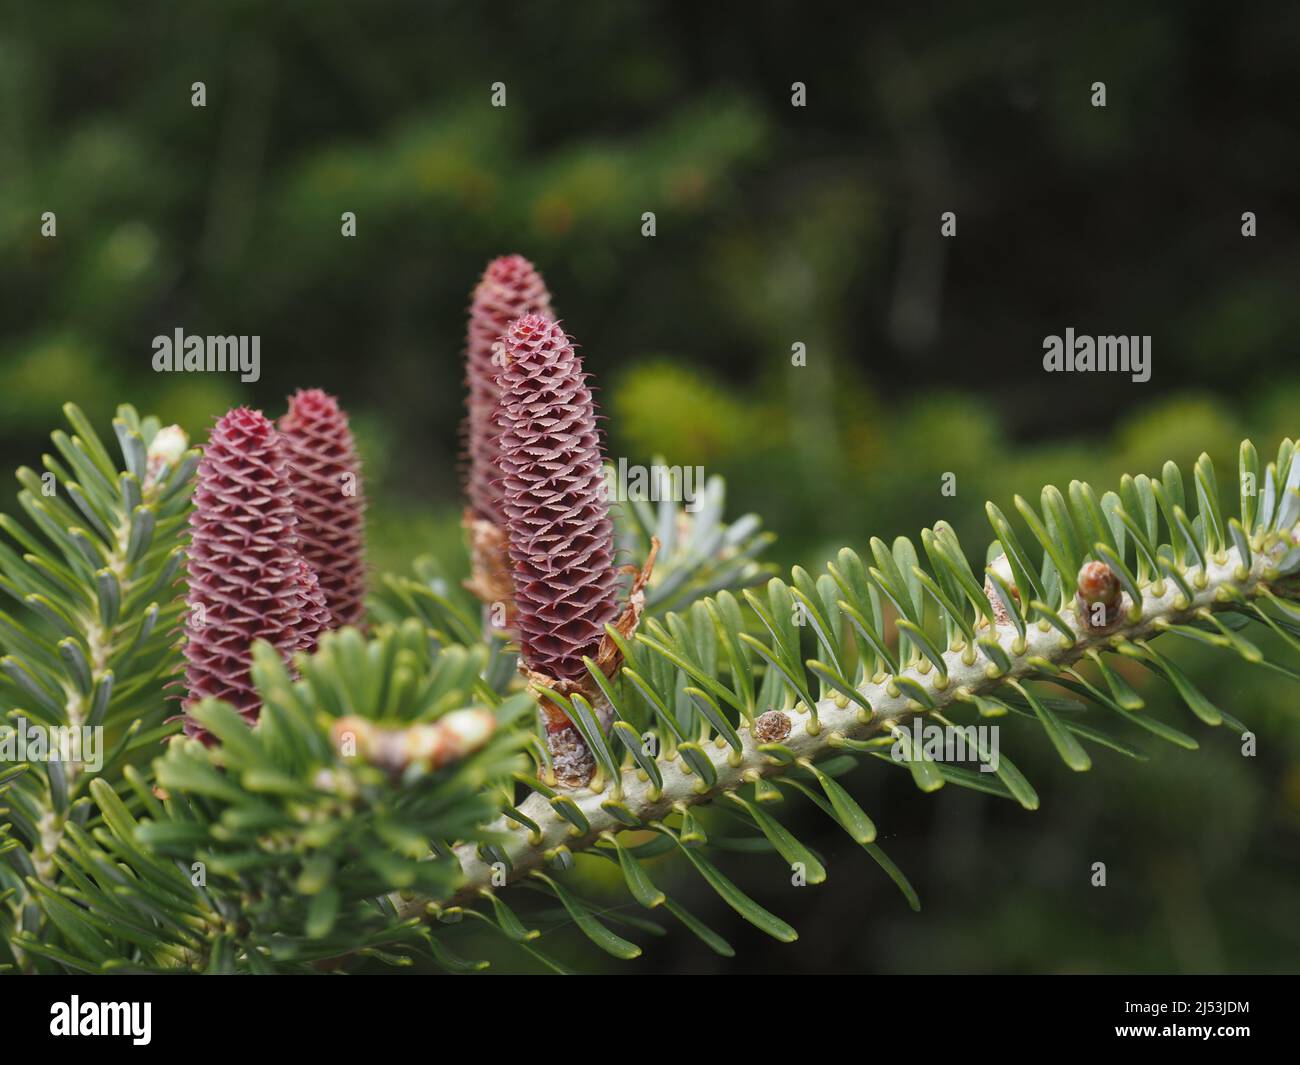 Korea fir, Abies koreana, pollinating female cones, close up, Stock Photo